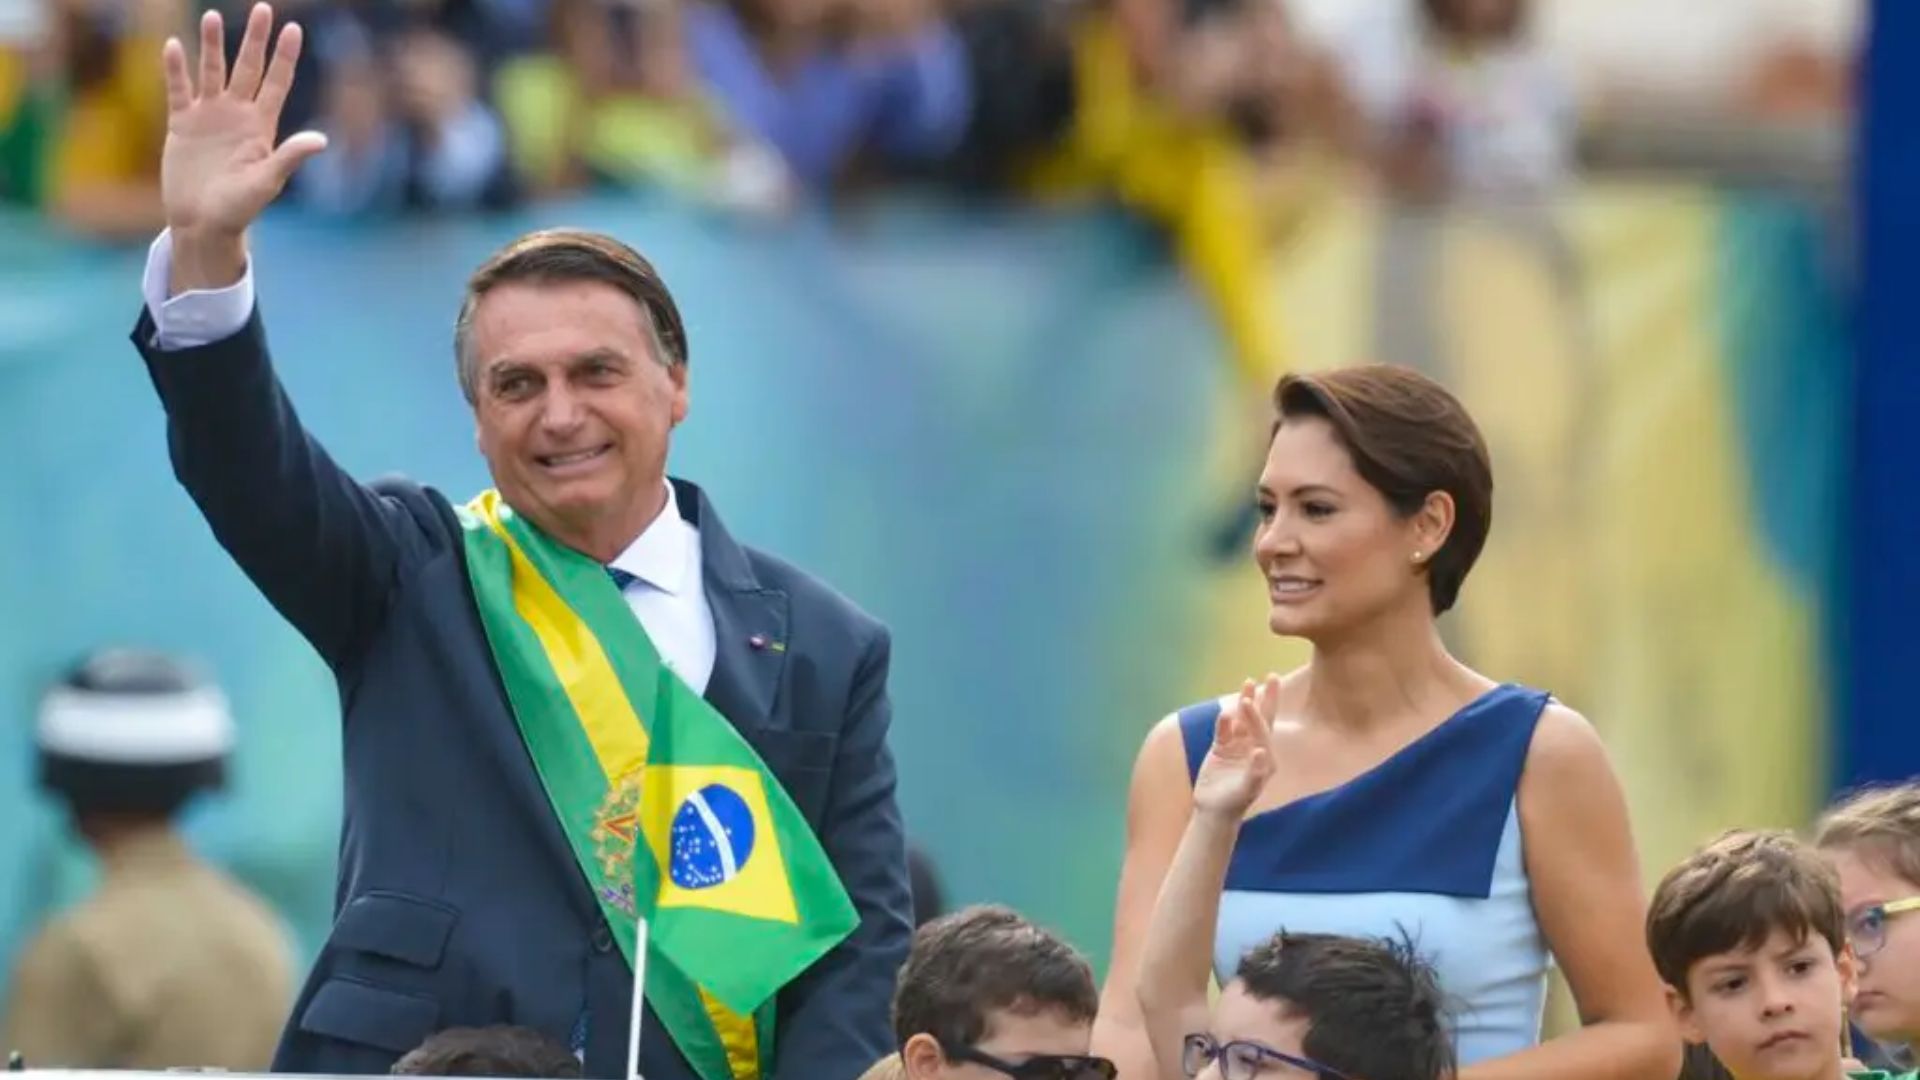 Jair Bolsonaro será o nosso próximo presidente, afirma ex-primeira-dama Michelle